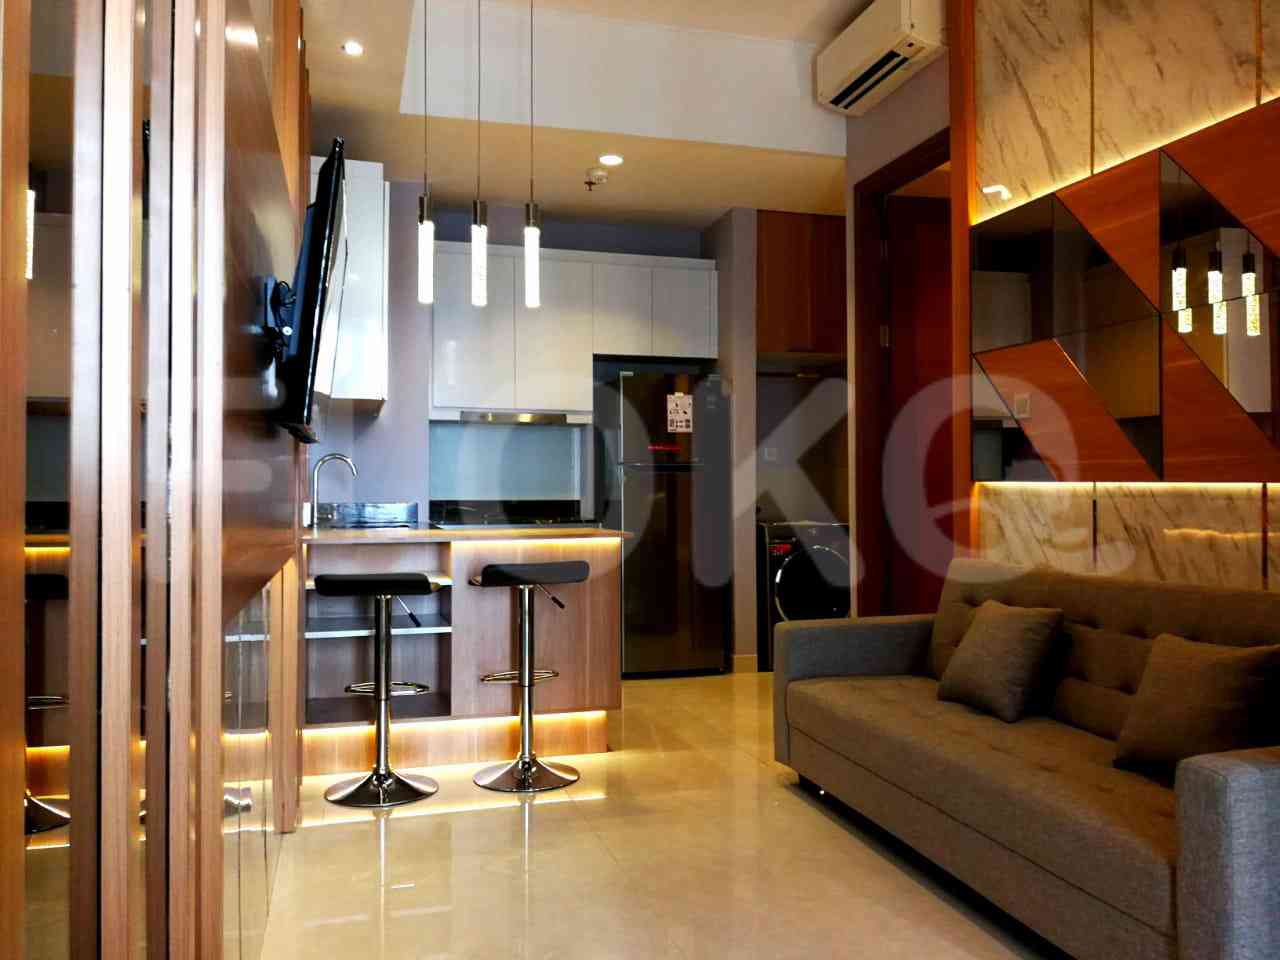 2 Bedroom on 15th Floor for Rent in Taman Anggrek Residence - ftaae7 5